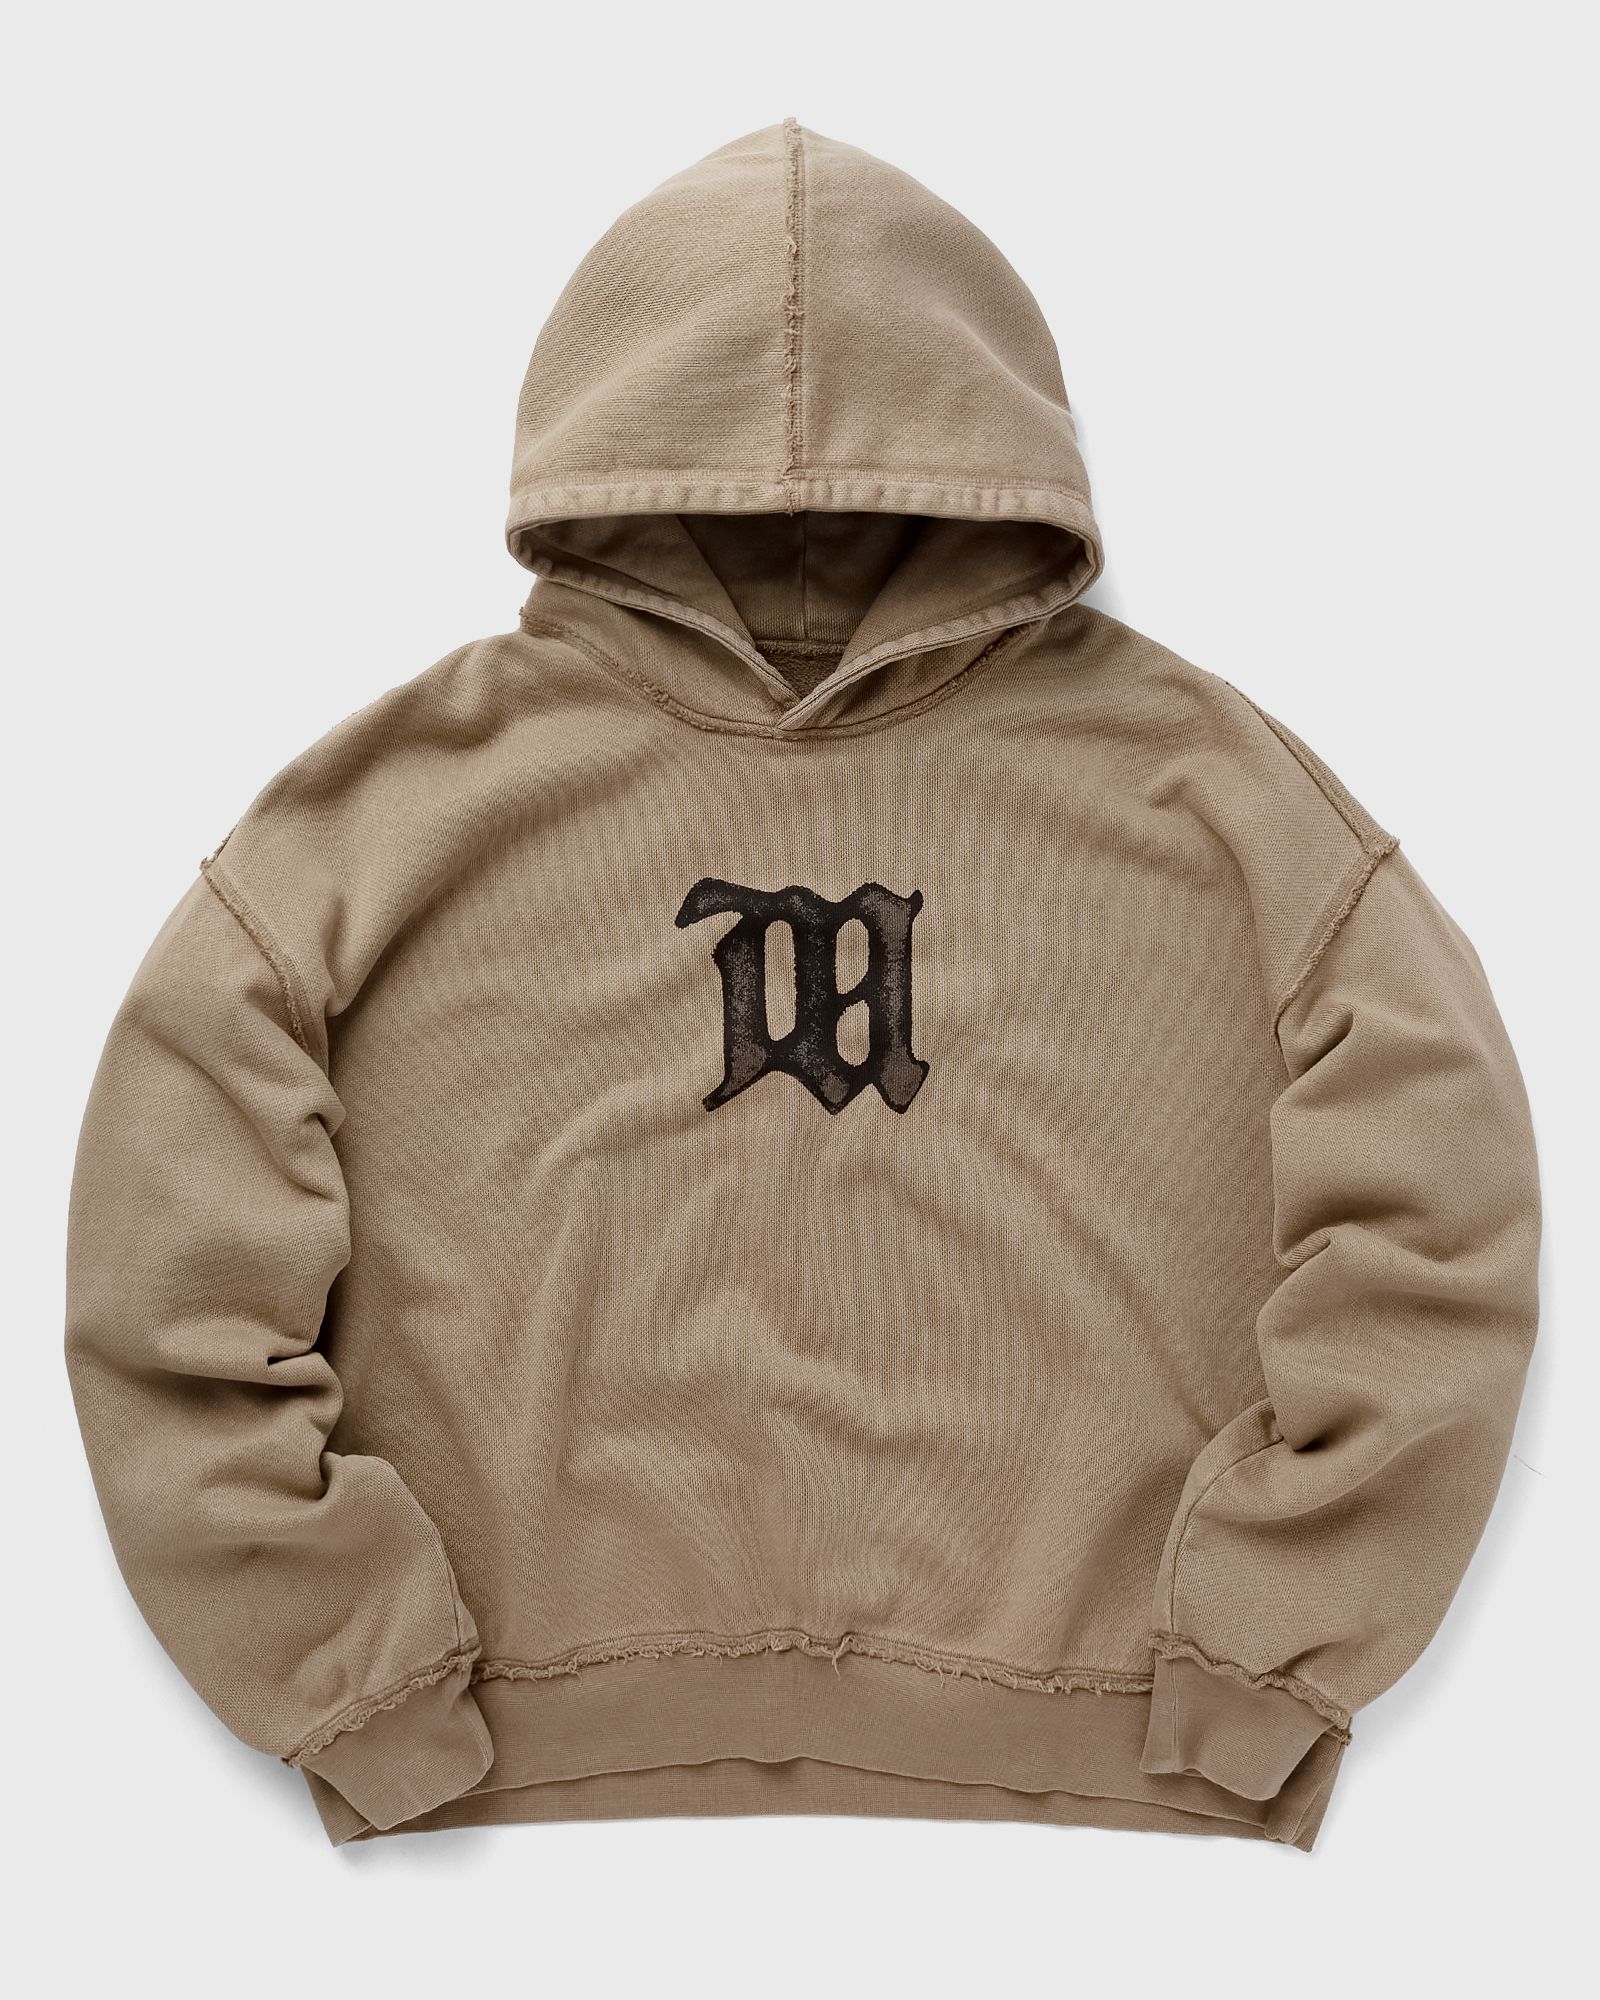 MISBHV - signature hoodie men hoodies brown in größe:m